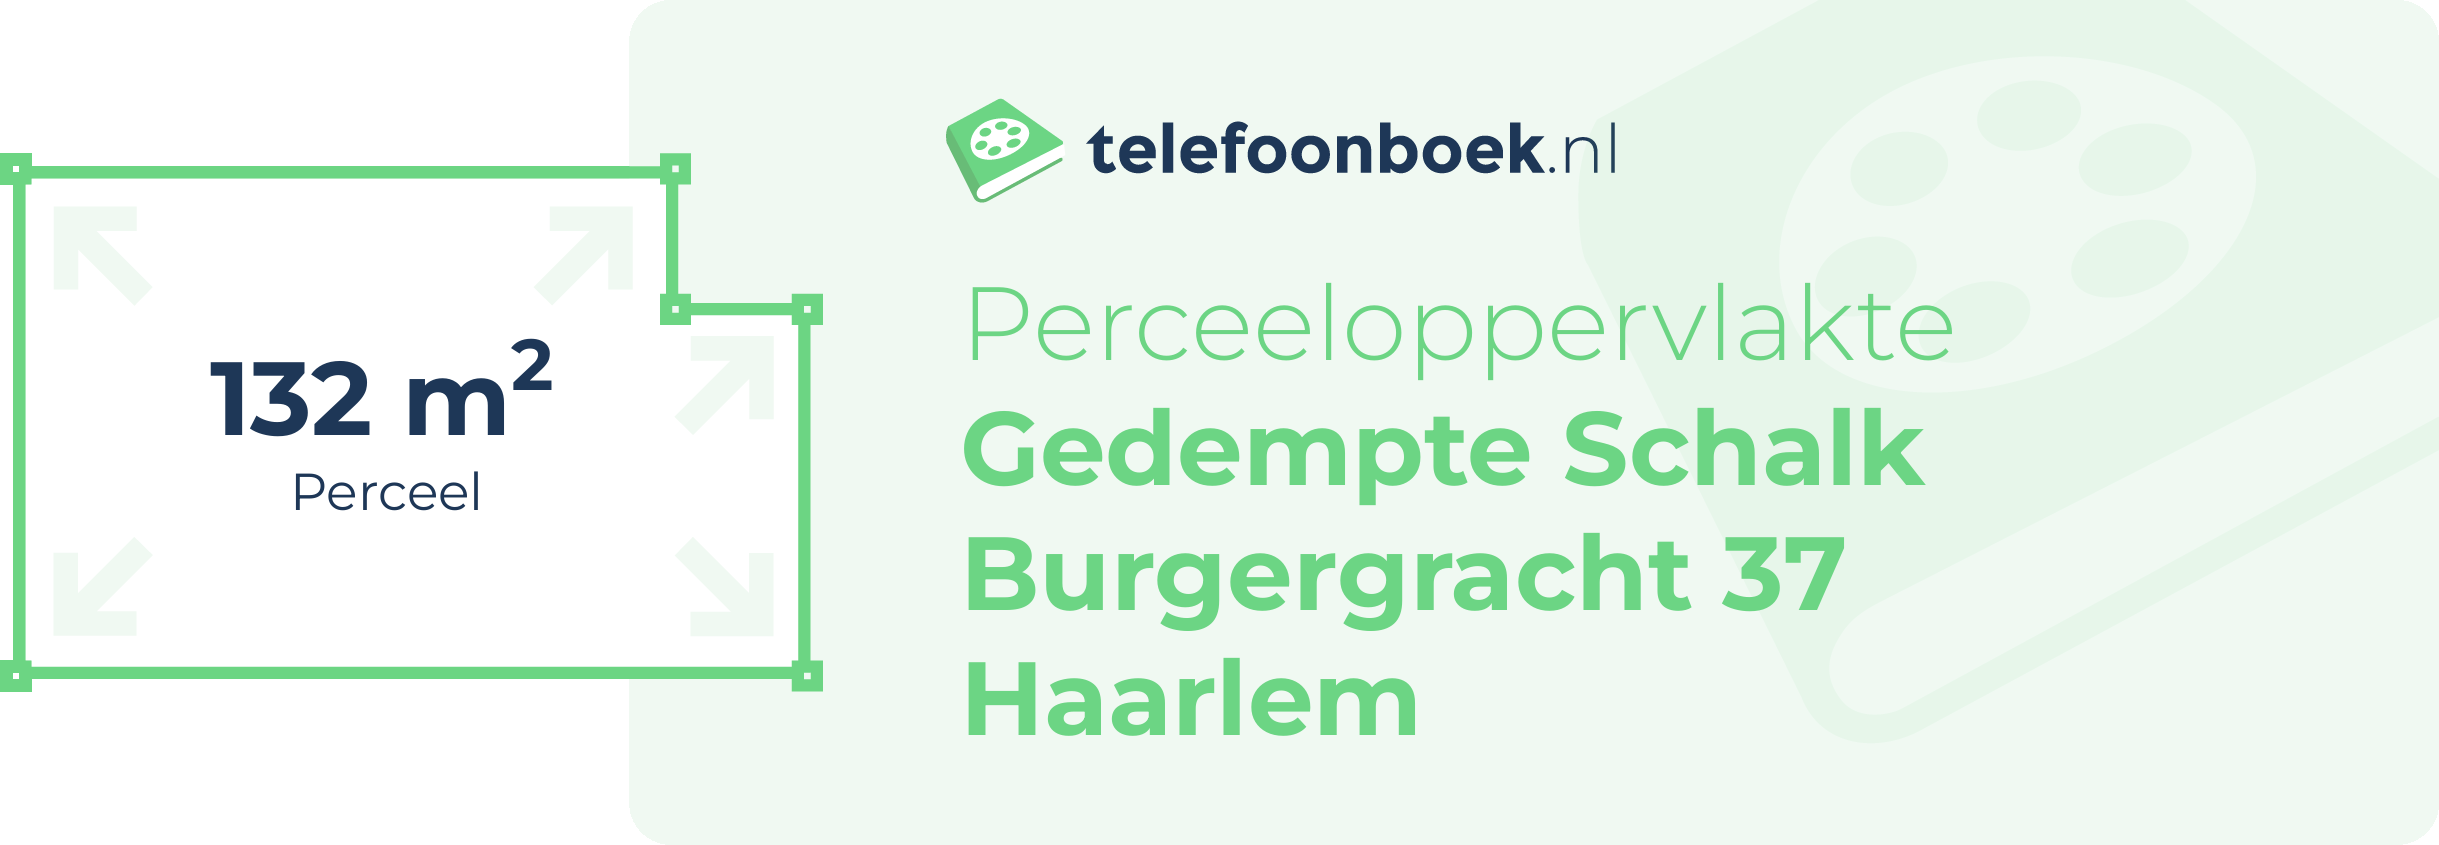 Perceeloppervlakte Gedempte Schalk Burgergracht 37 Haarlem